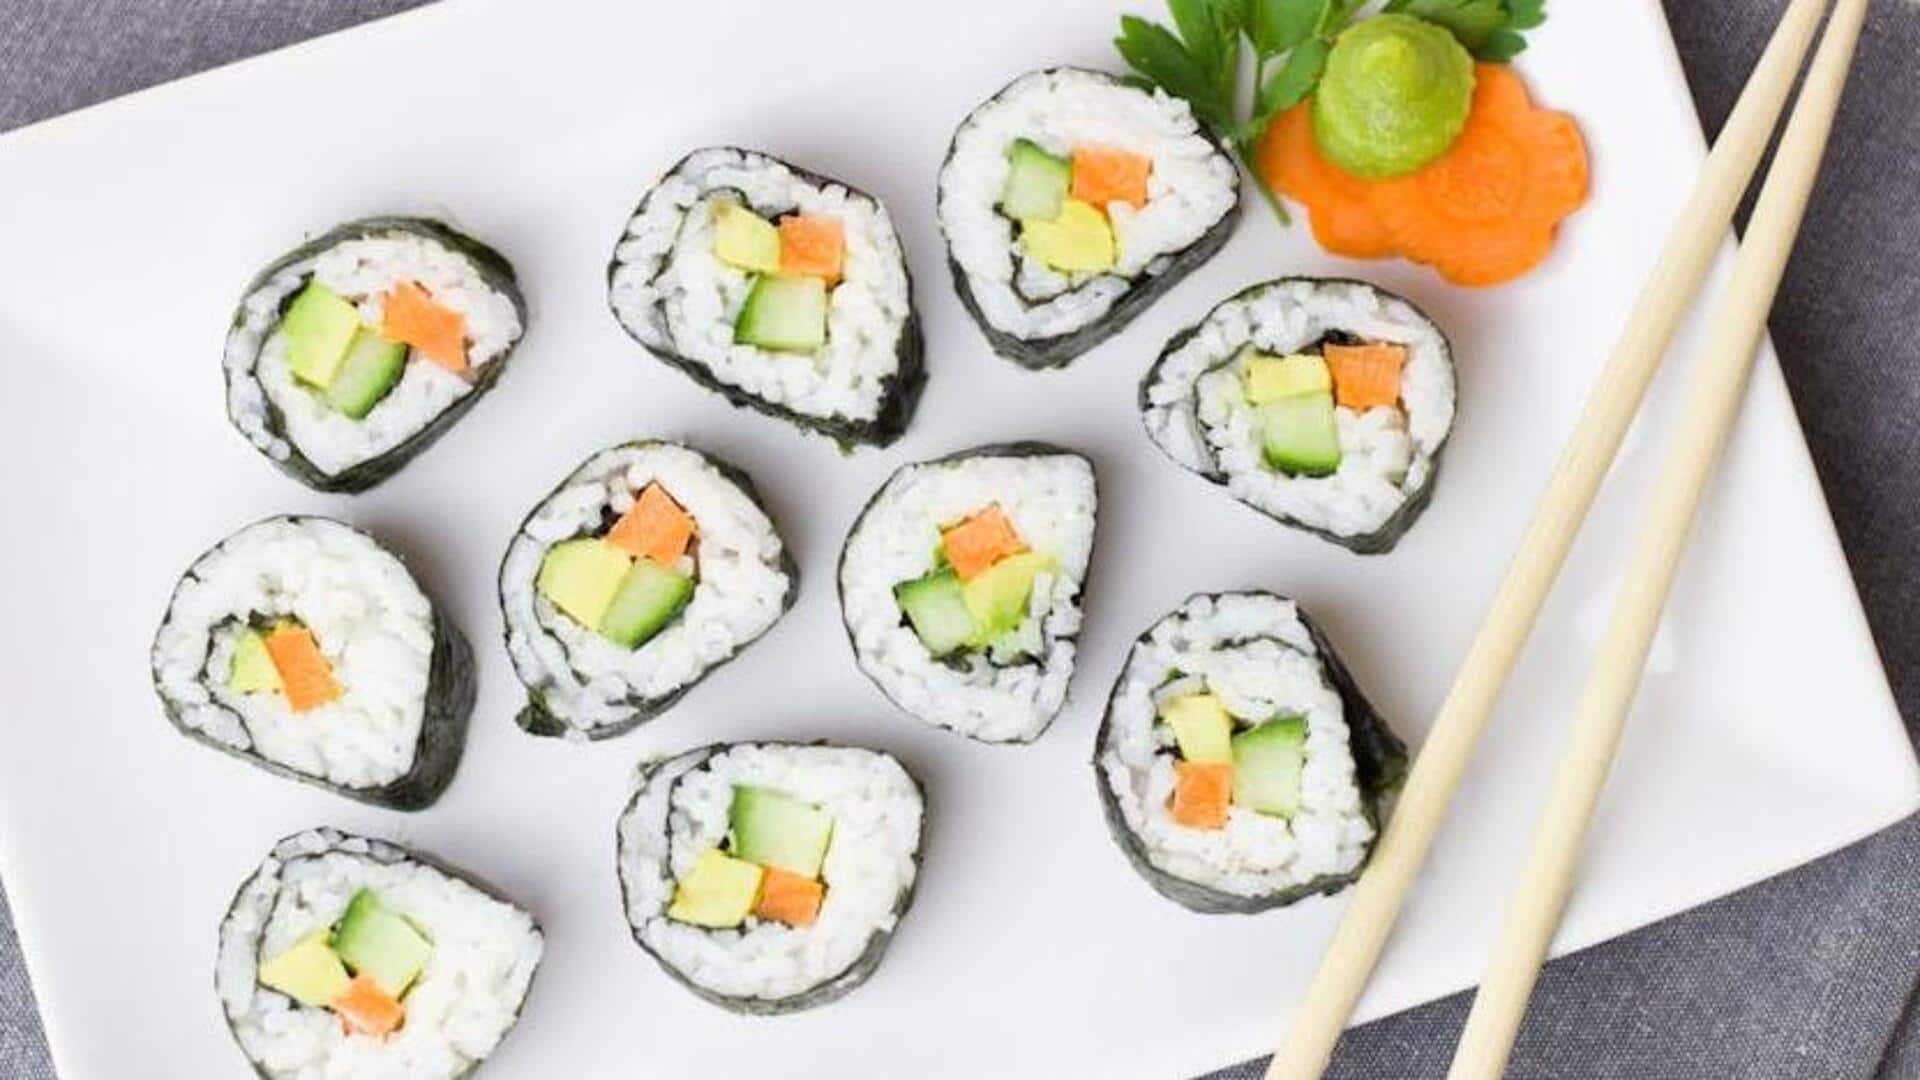 It's recipe time! Prepare this delicious quinoa vegan sushi